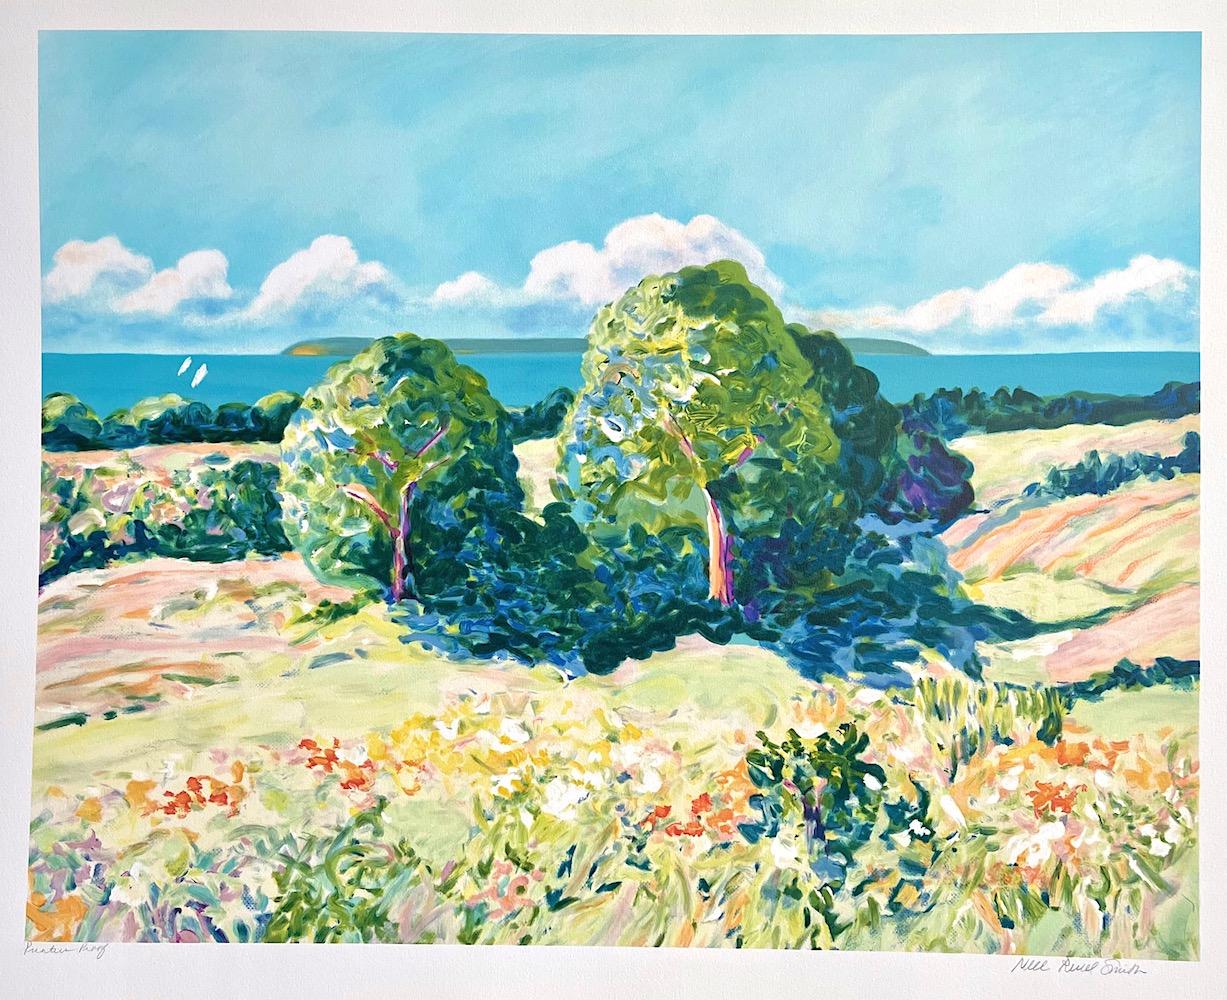 Paysage au pastel : arbres impressionnistes, lithographie dessinée à la main, style Monet